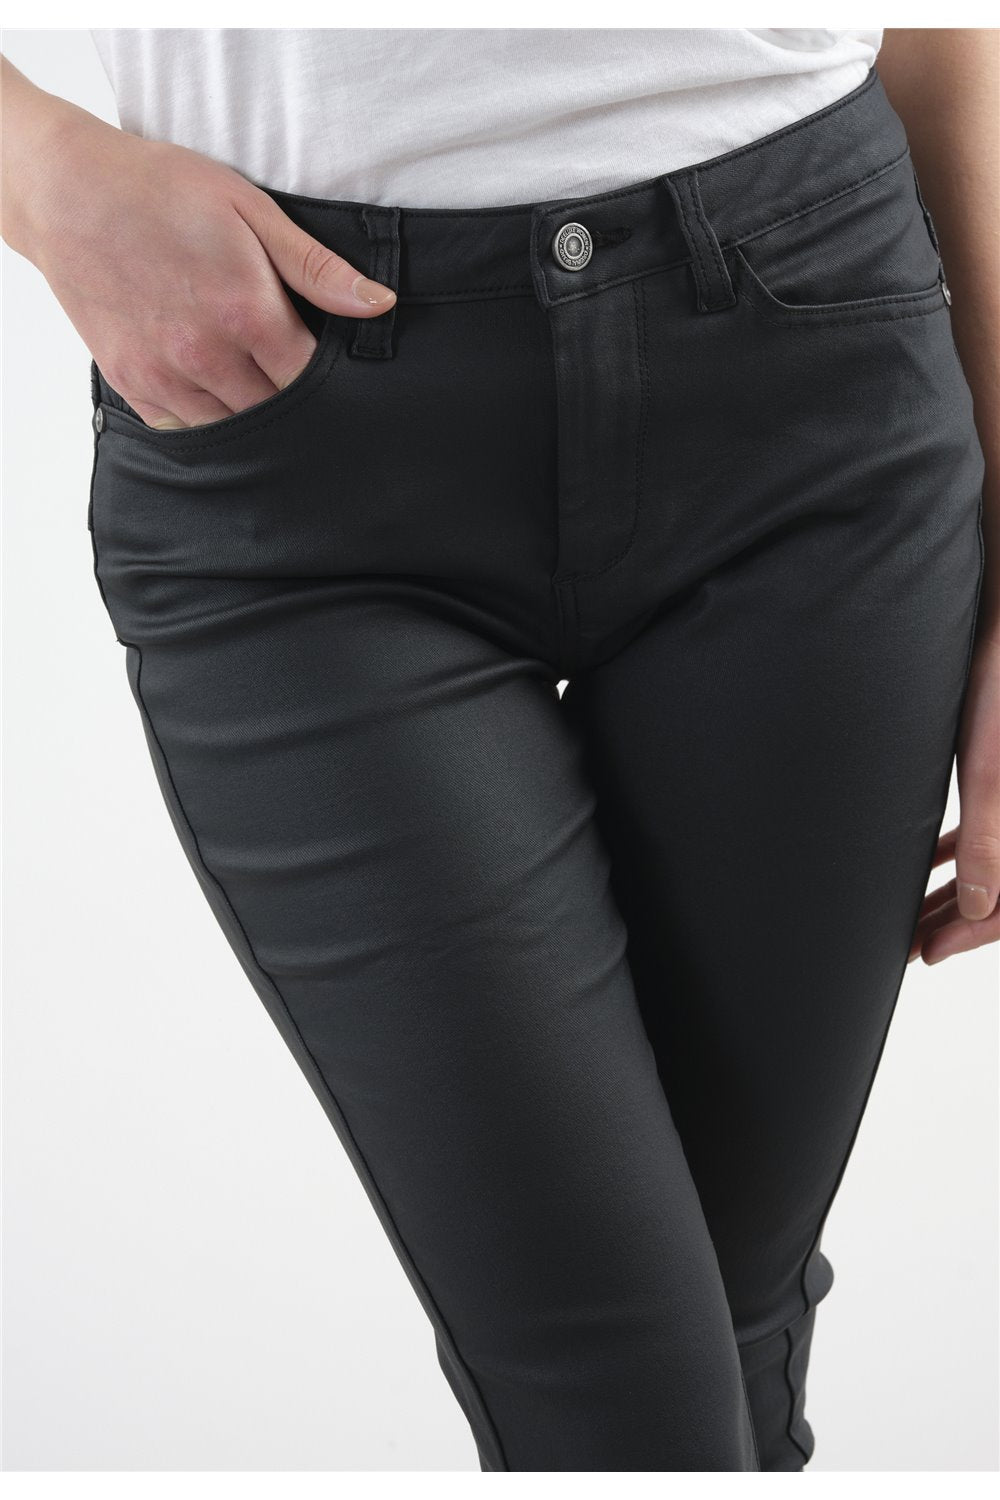 Pantalon slim noir avec enduction noir Lyzie de Deeluxe